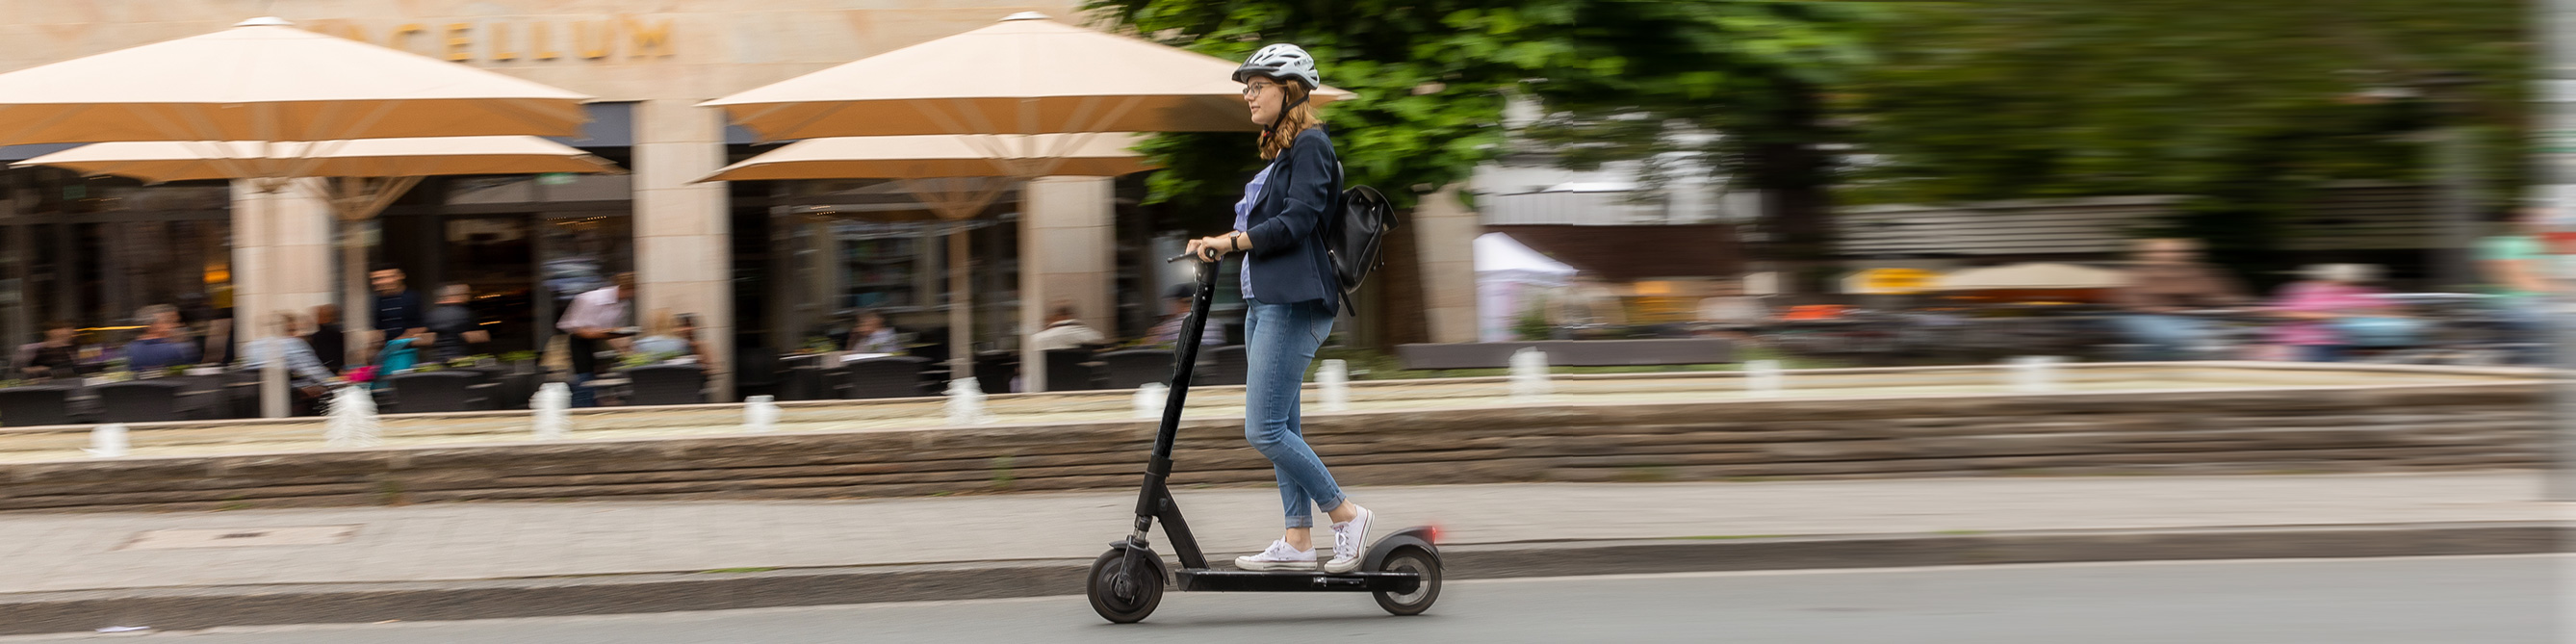 Frau fährt auf E-Scooter über Straße